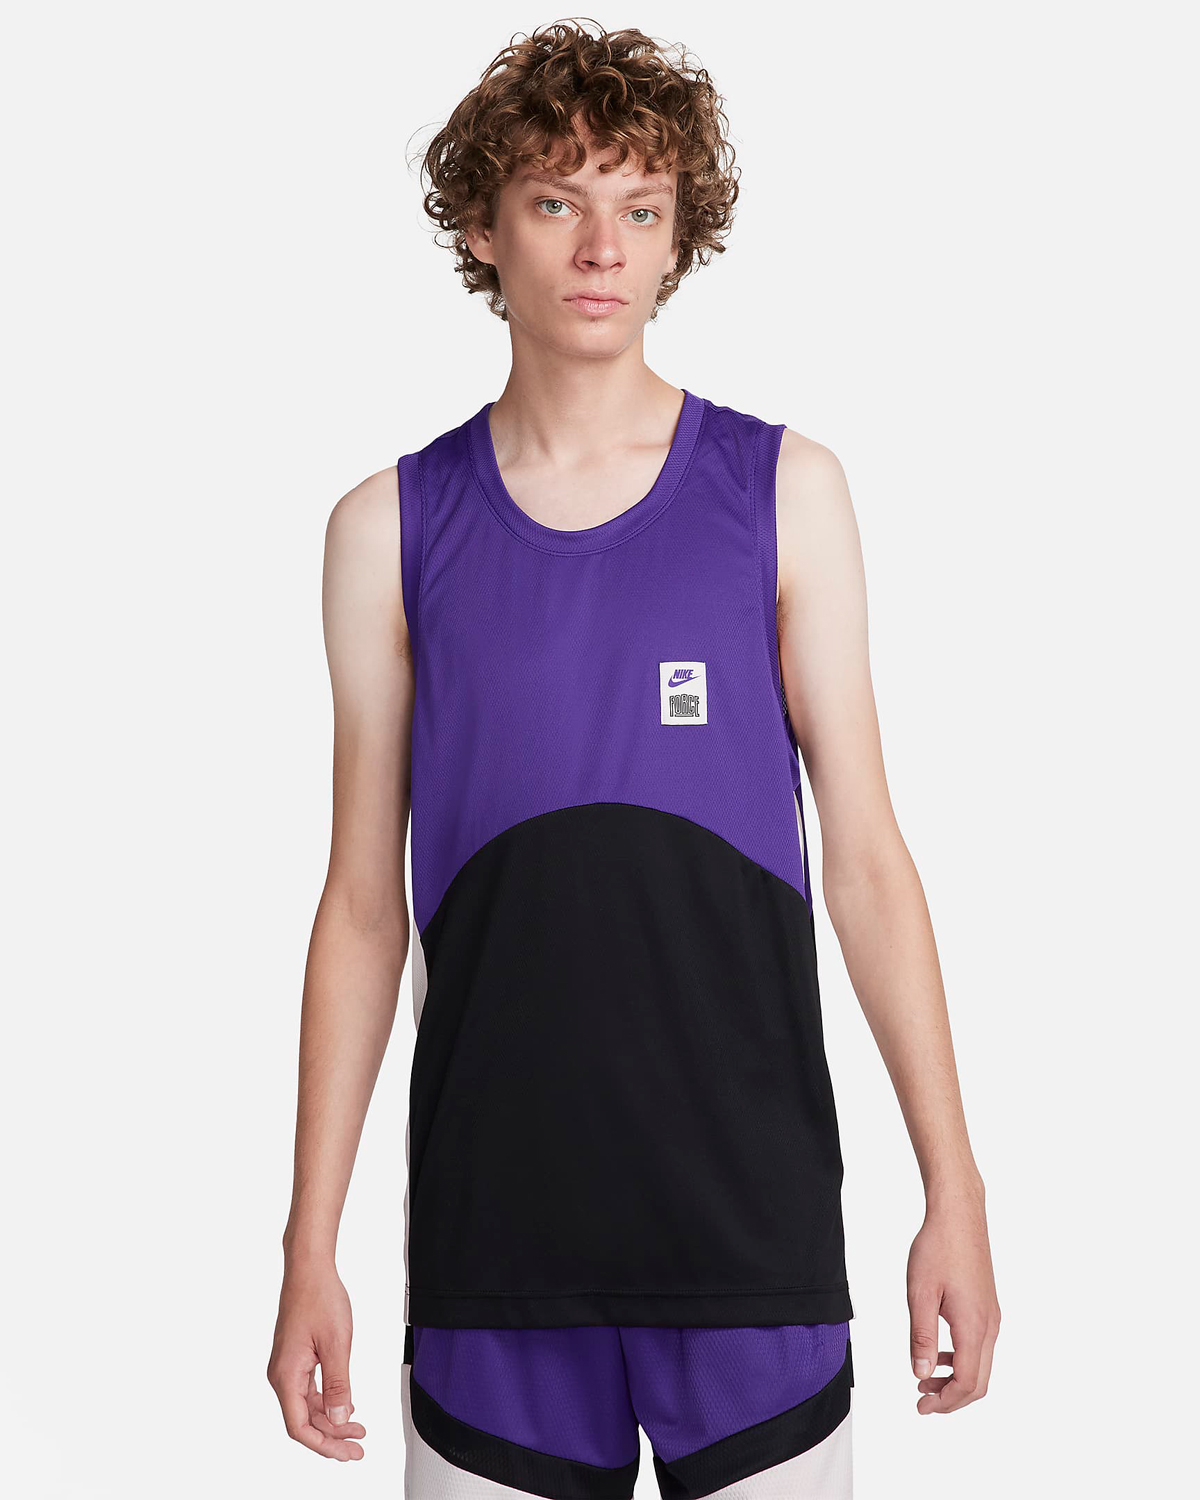 Nike-Starting-5-Basketball-Jersey-Field-Purple